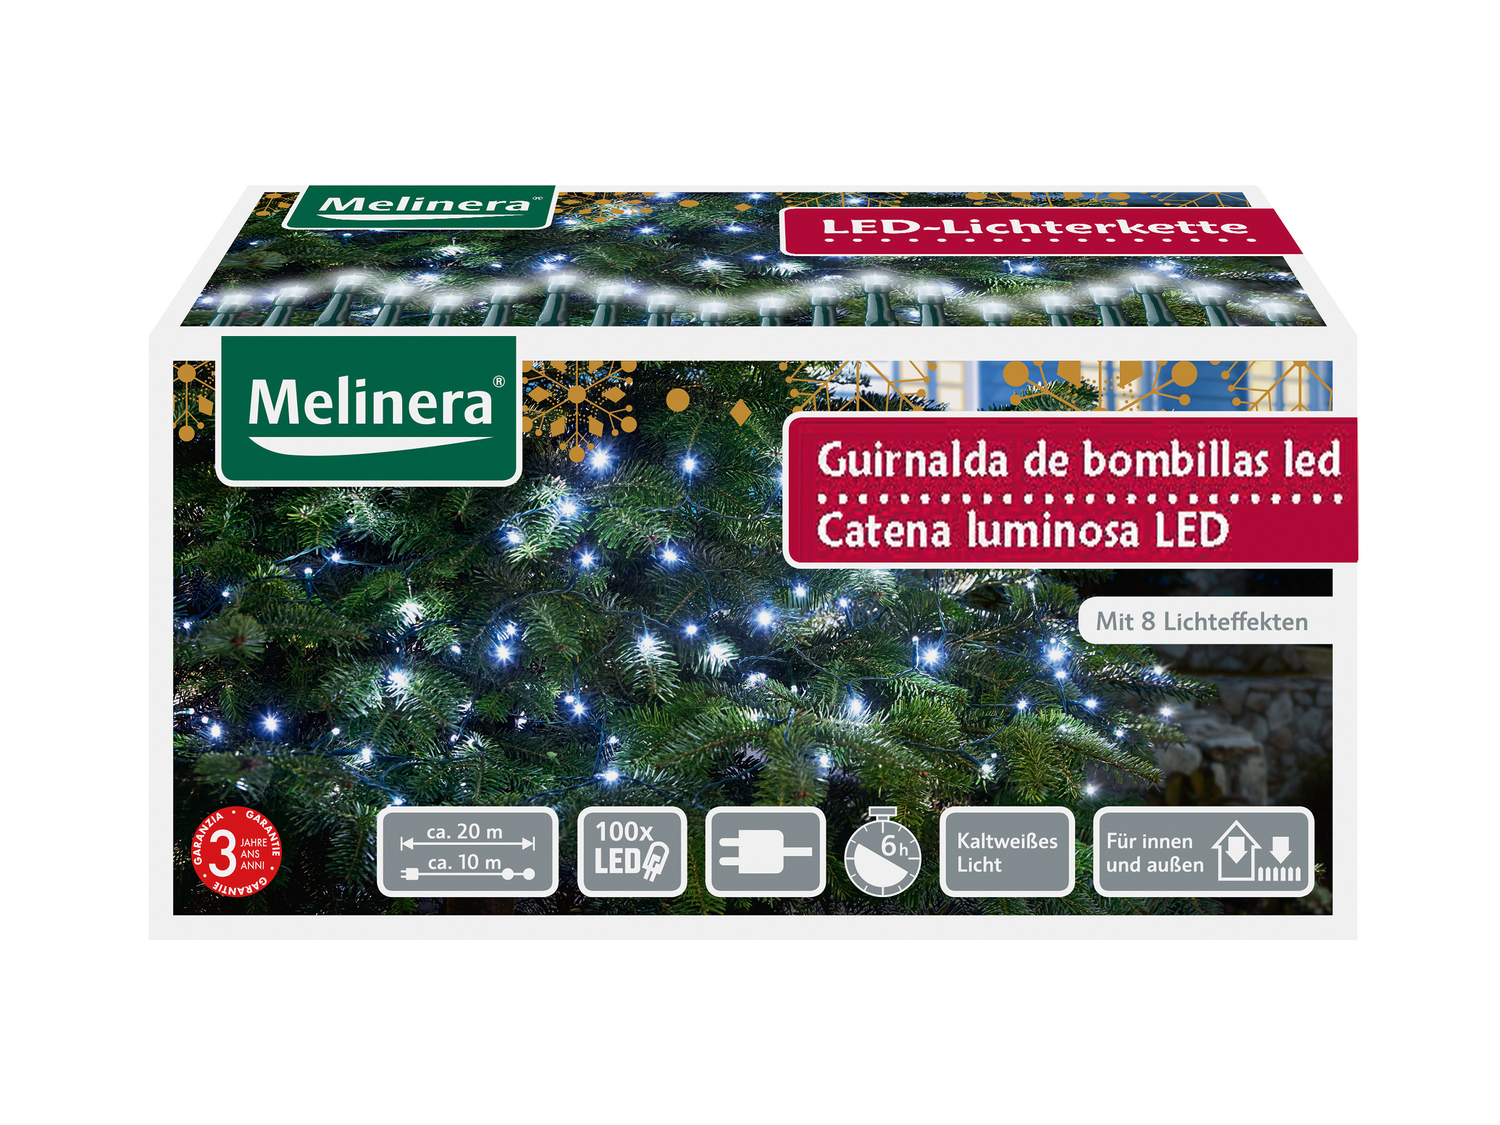 Catena luminosa LED Melinera, le prix 9.99 &#8364; 
- Per ambienti interni ...